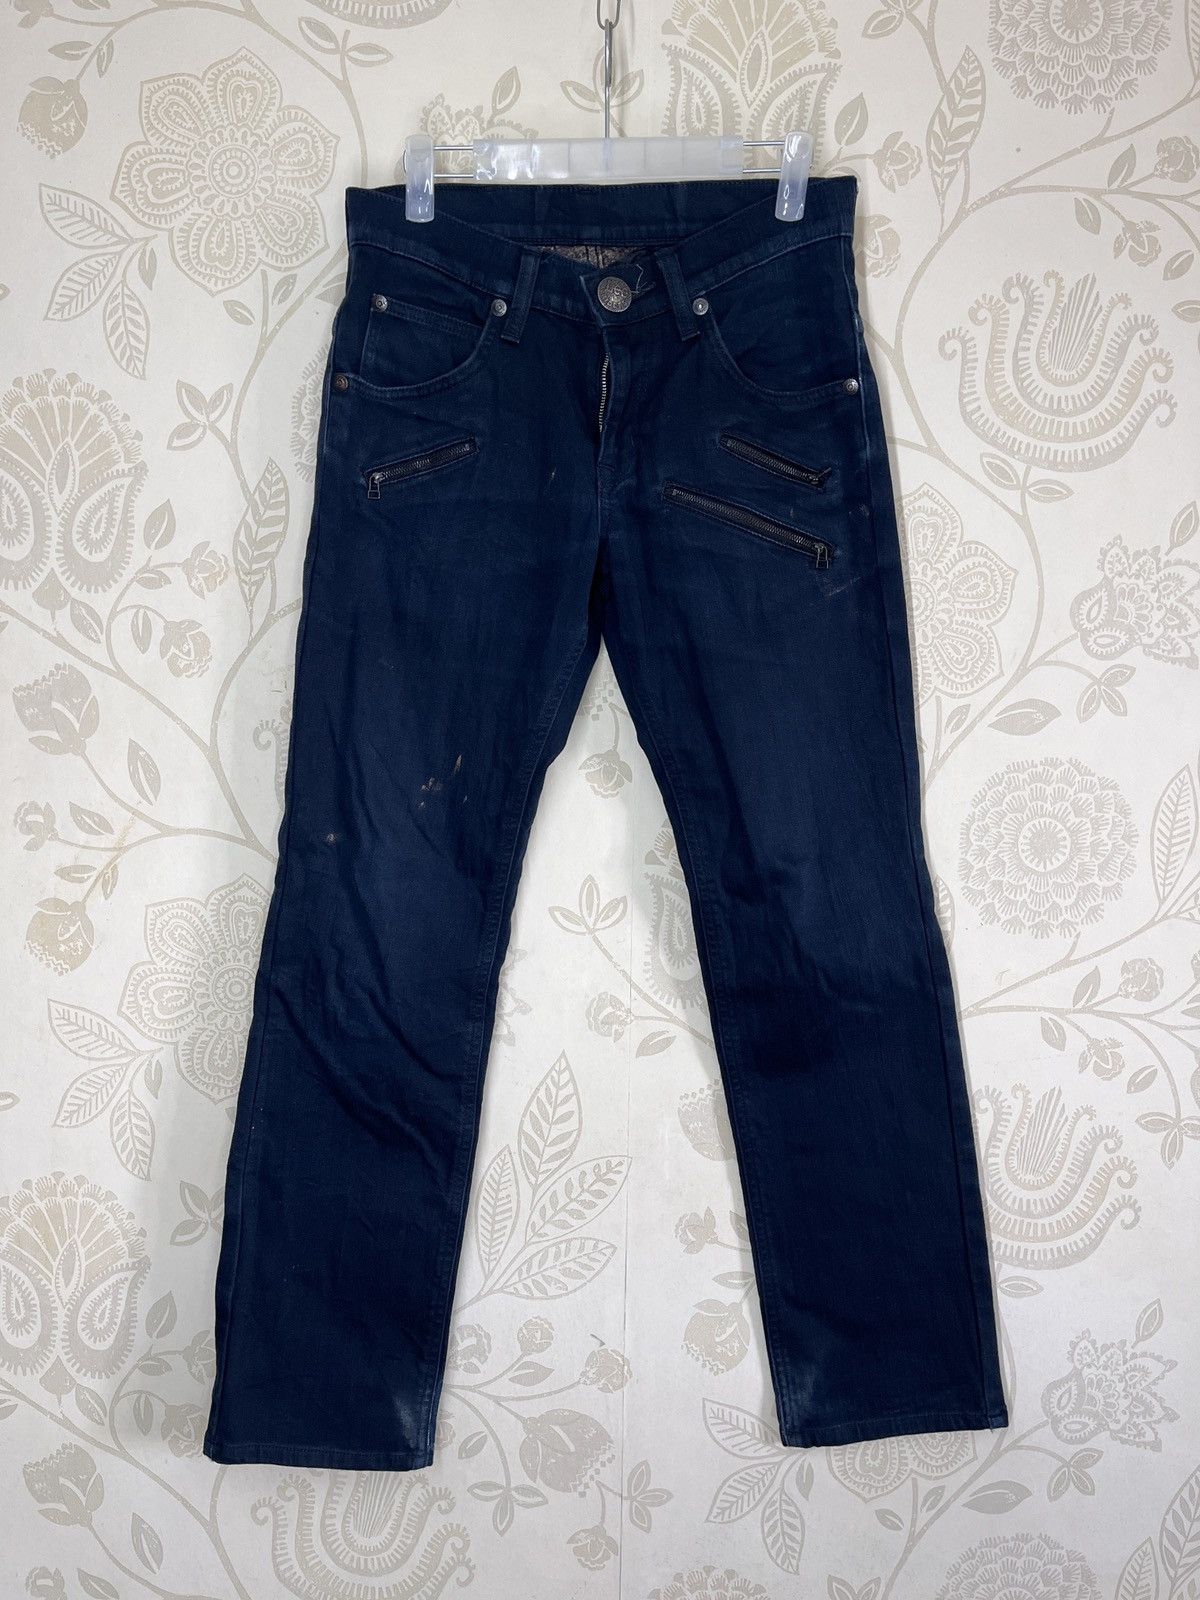 Multipocket Lee Rider Denim Jeans Vintage - 1